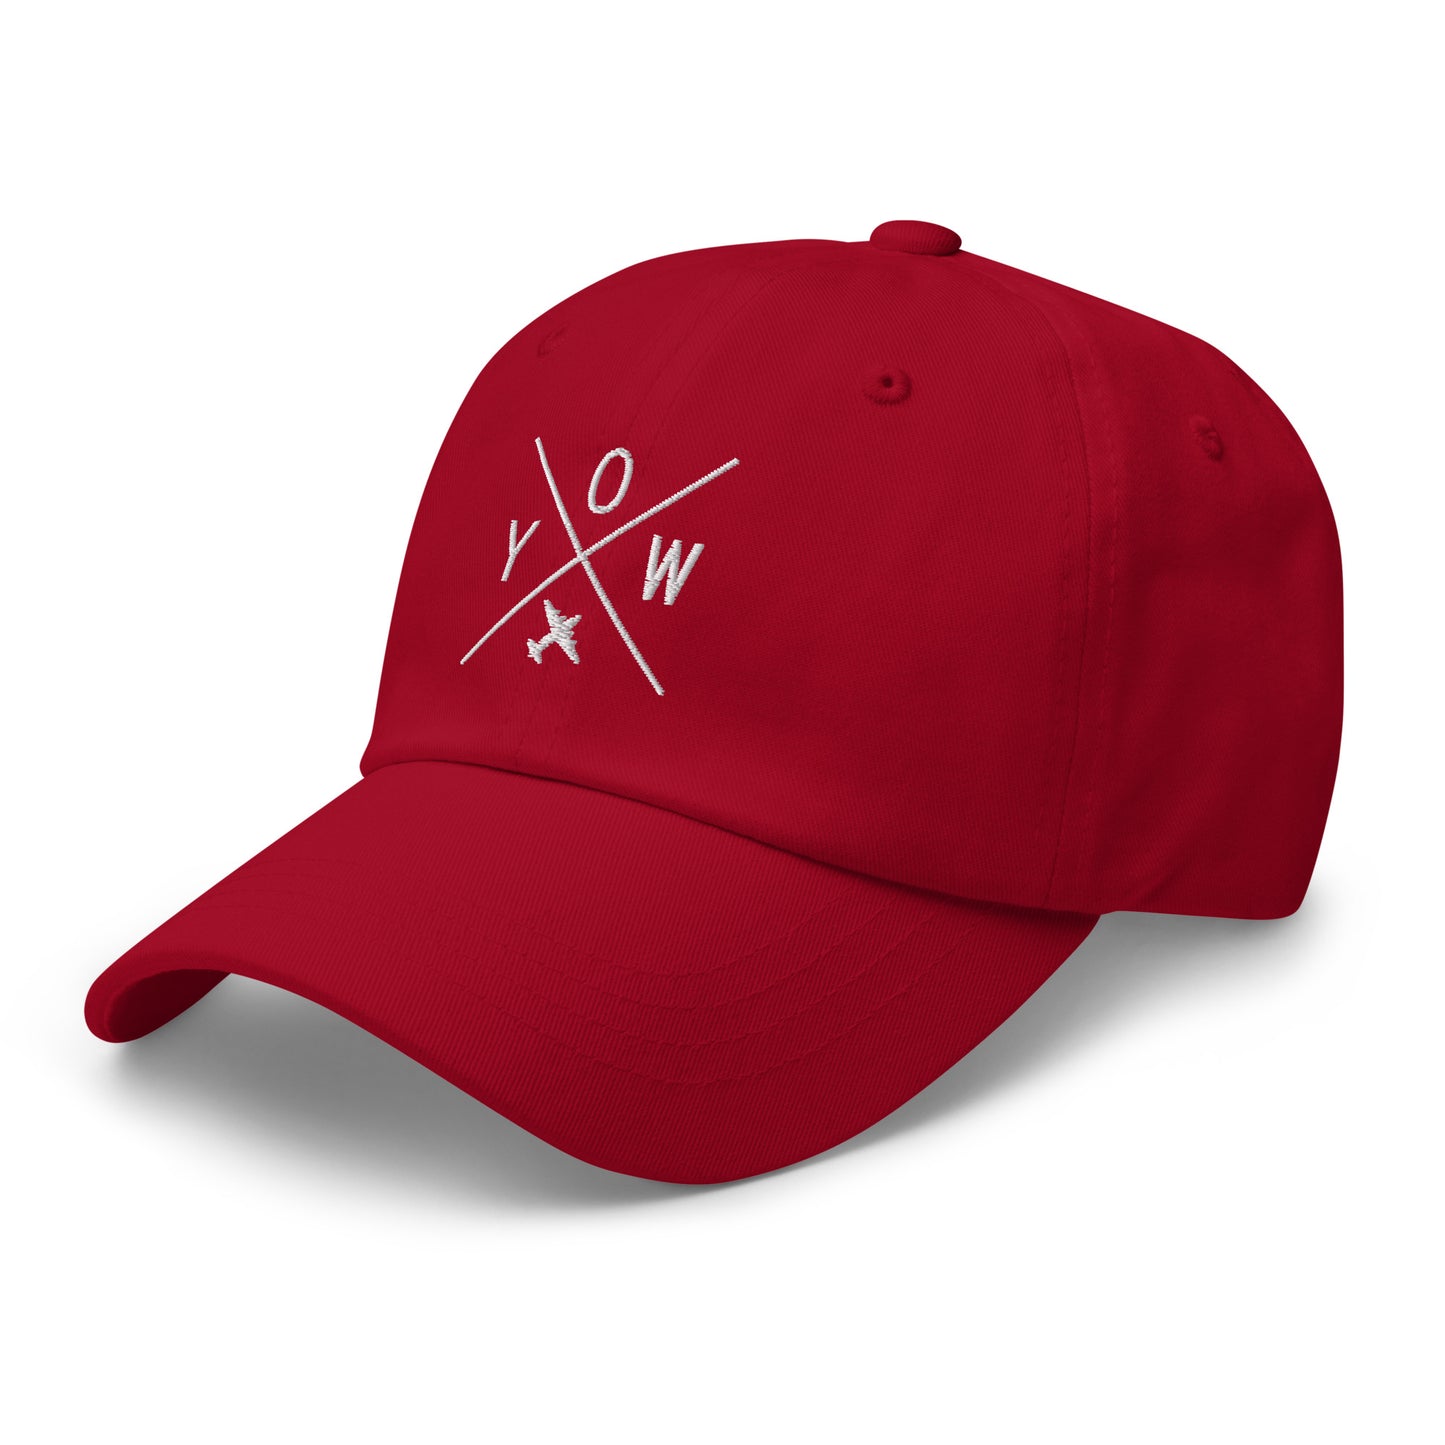 Crossed-X Dad Hat - White • YOW Ottawa • YHM Designs - Image 01